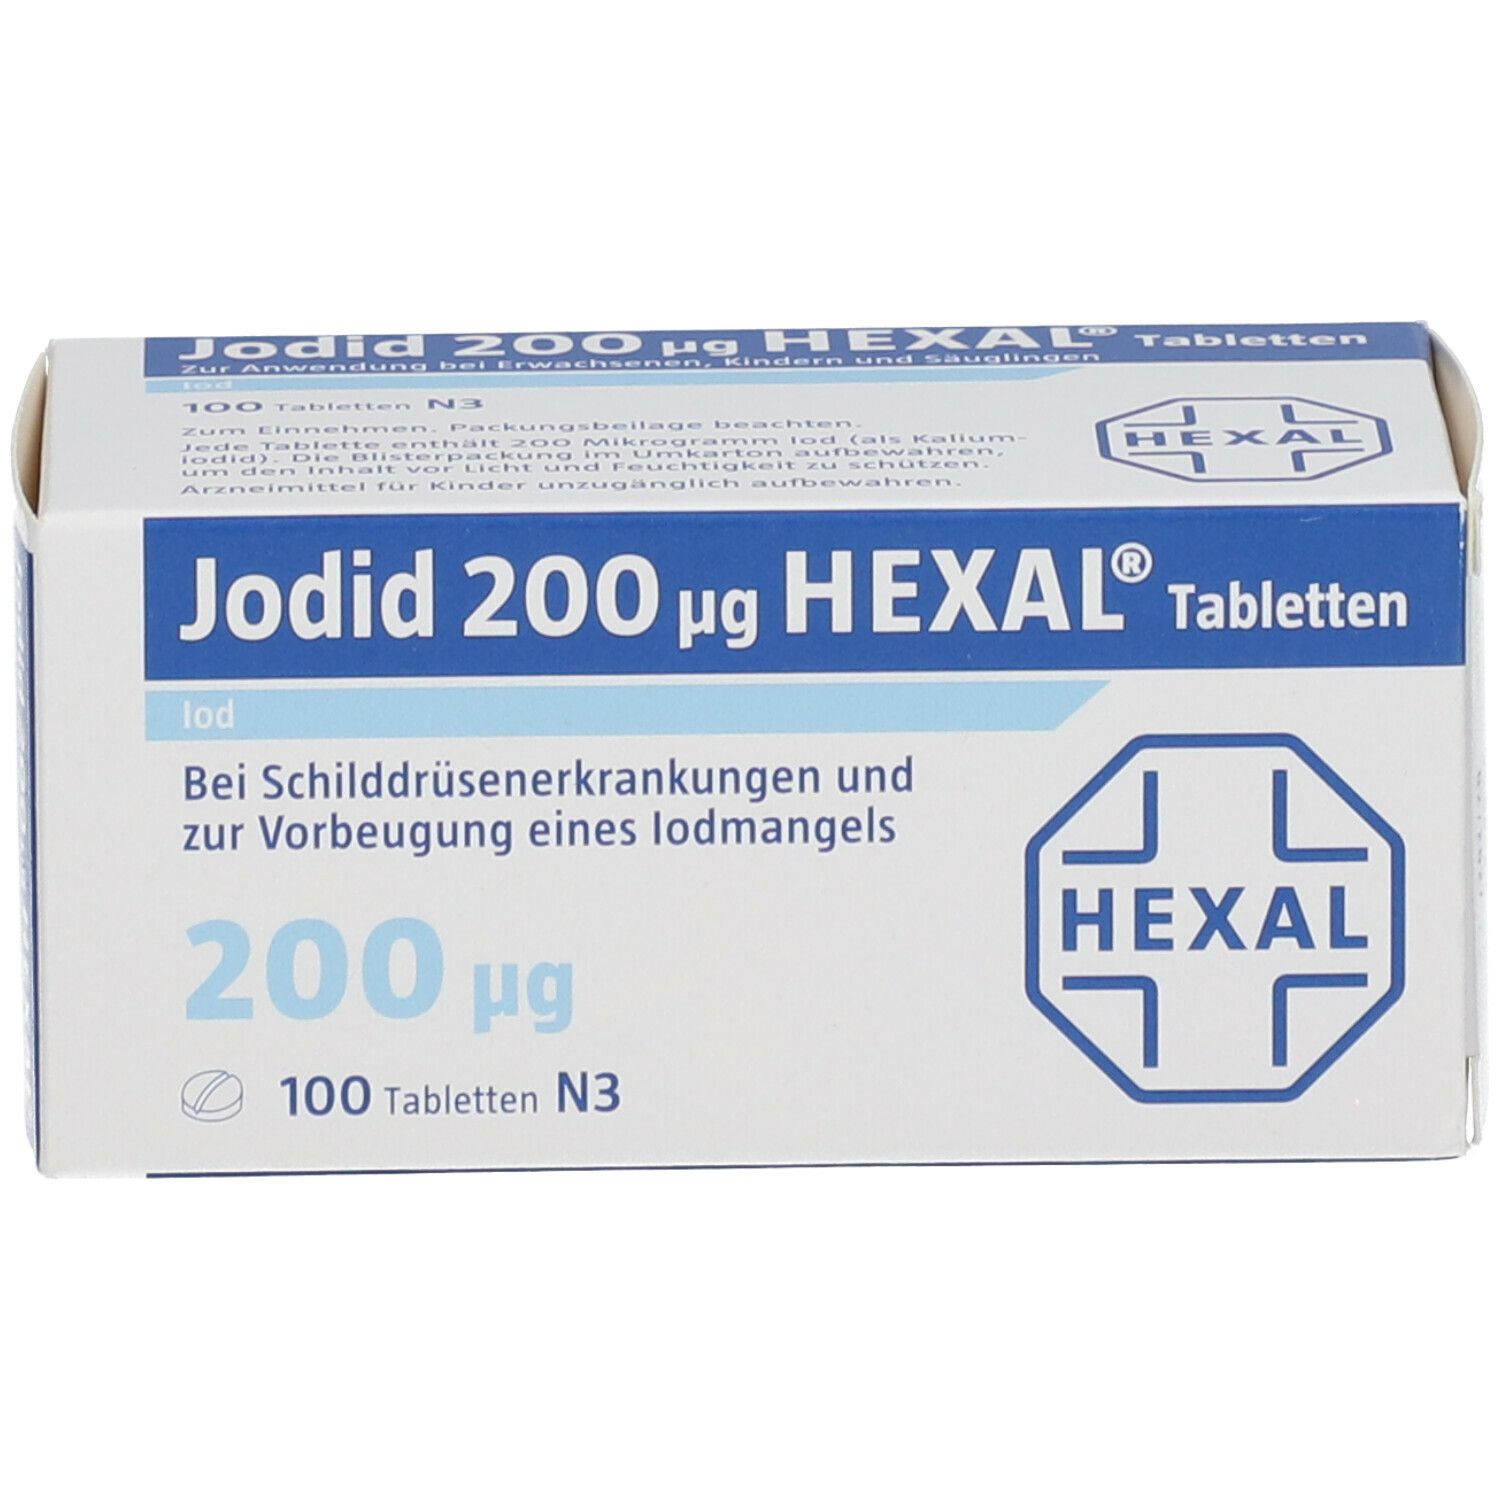 Jodid 200 µg HEXAL®